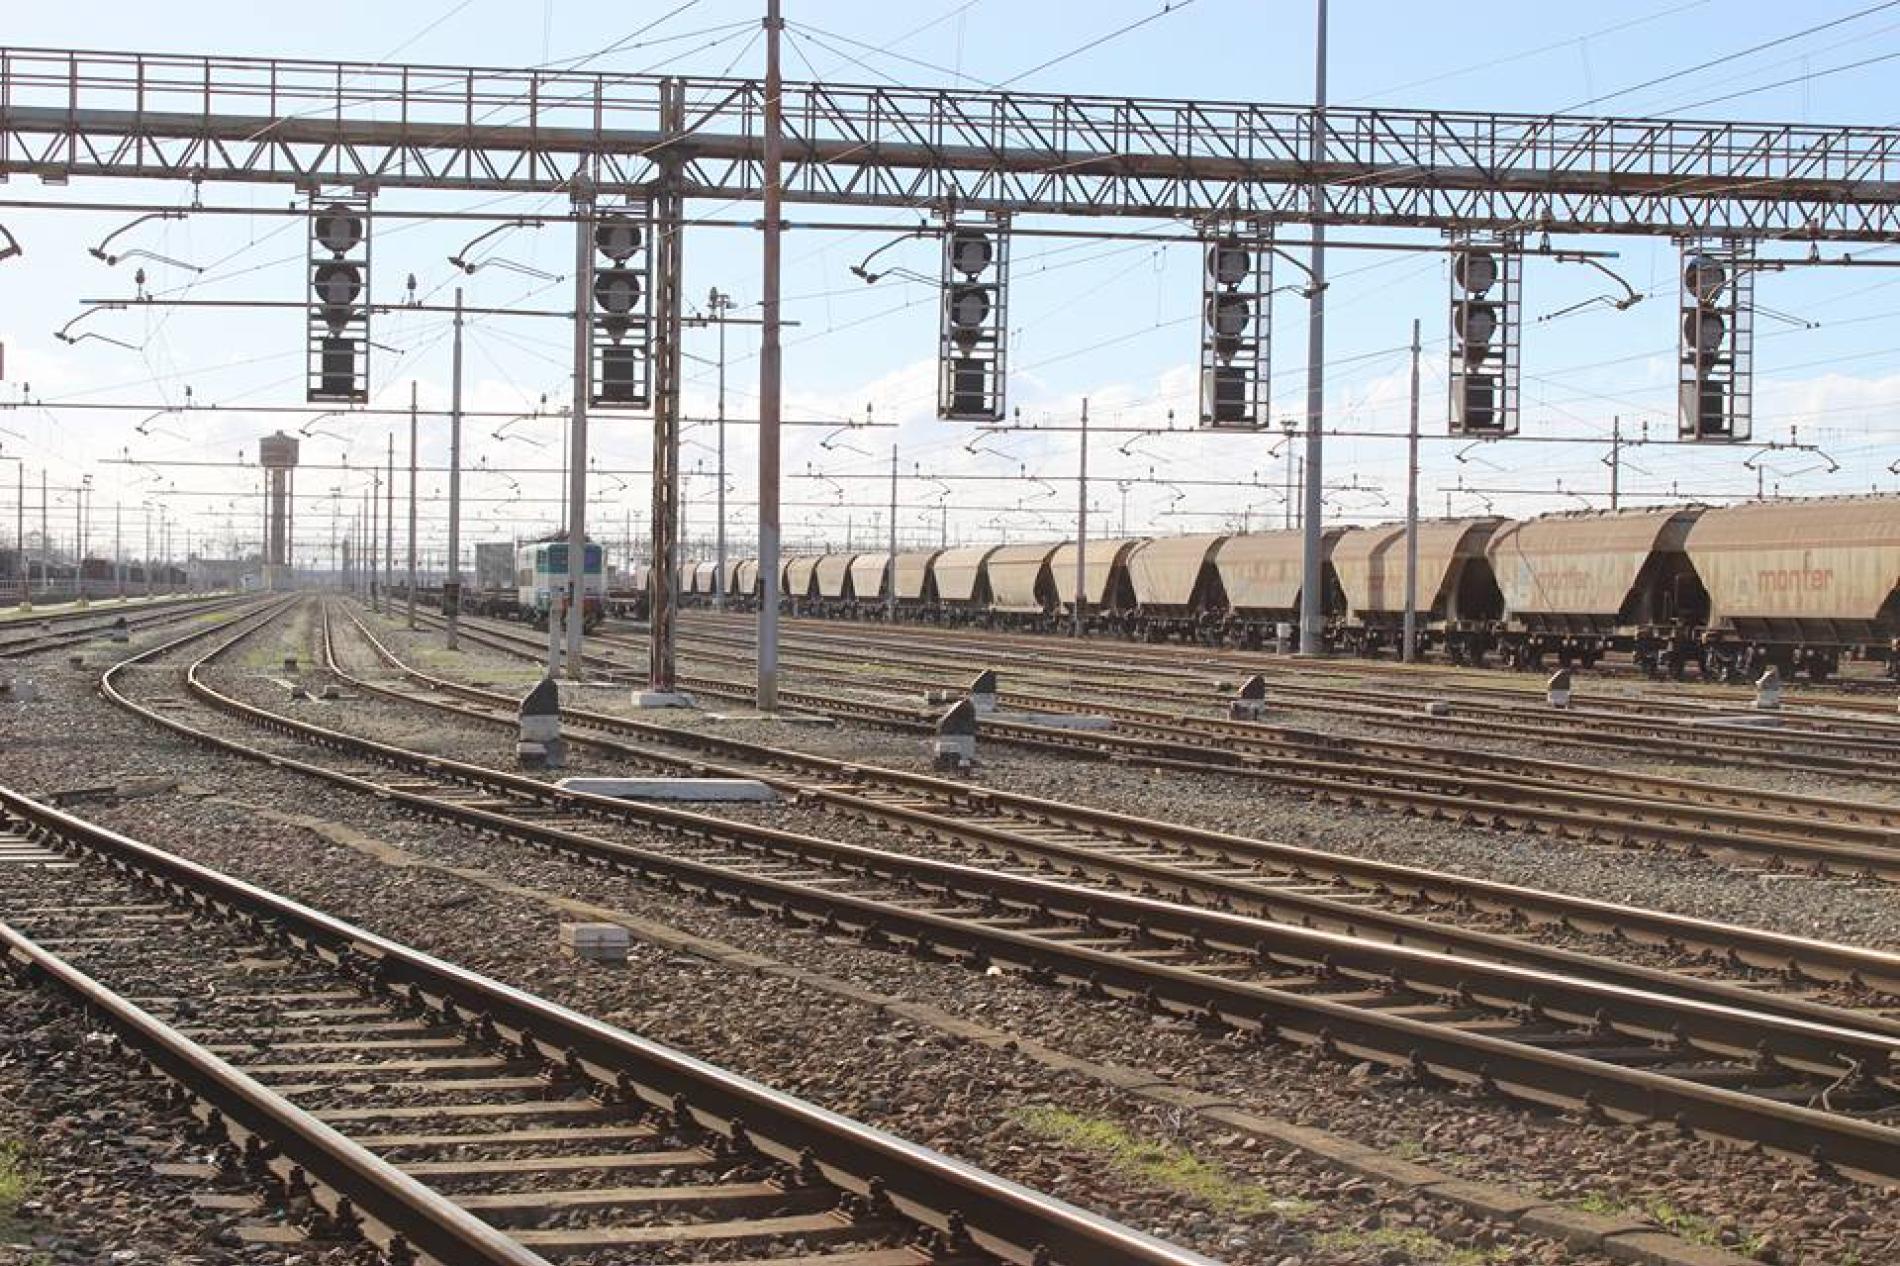 M5S: “Scalo ferroviario, decisivi gli emendamenti dell’ex senatrice Matrisciano”